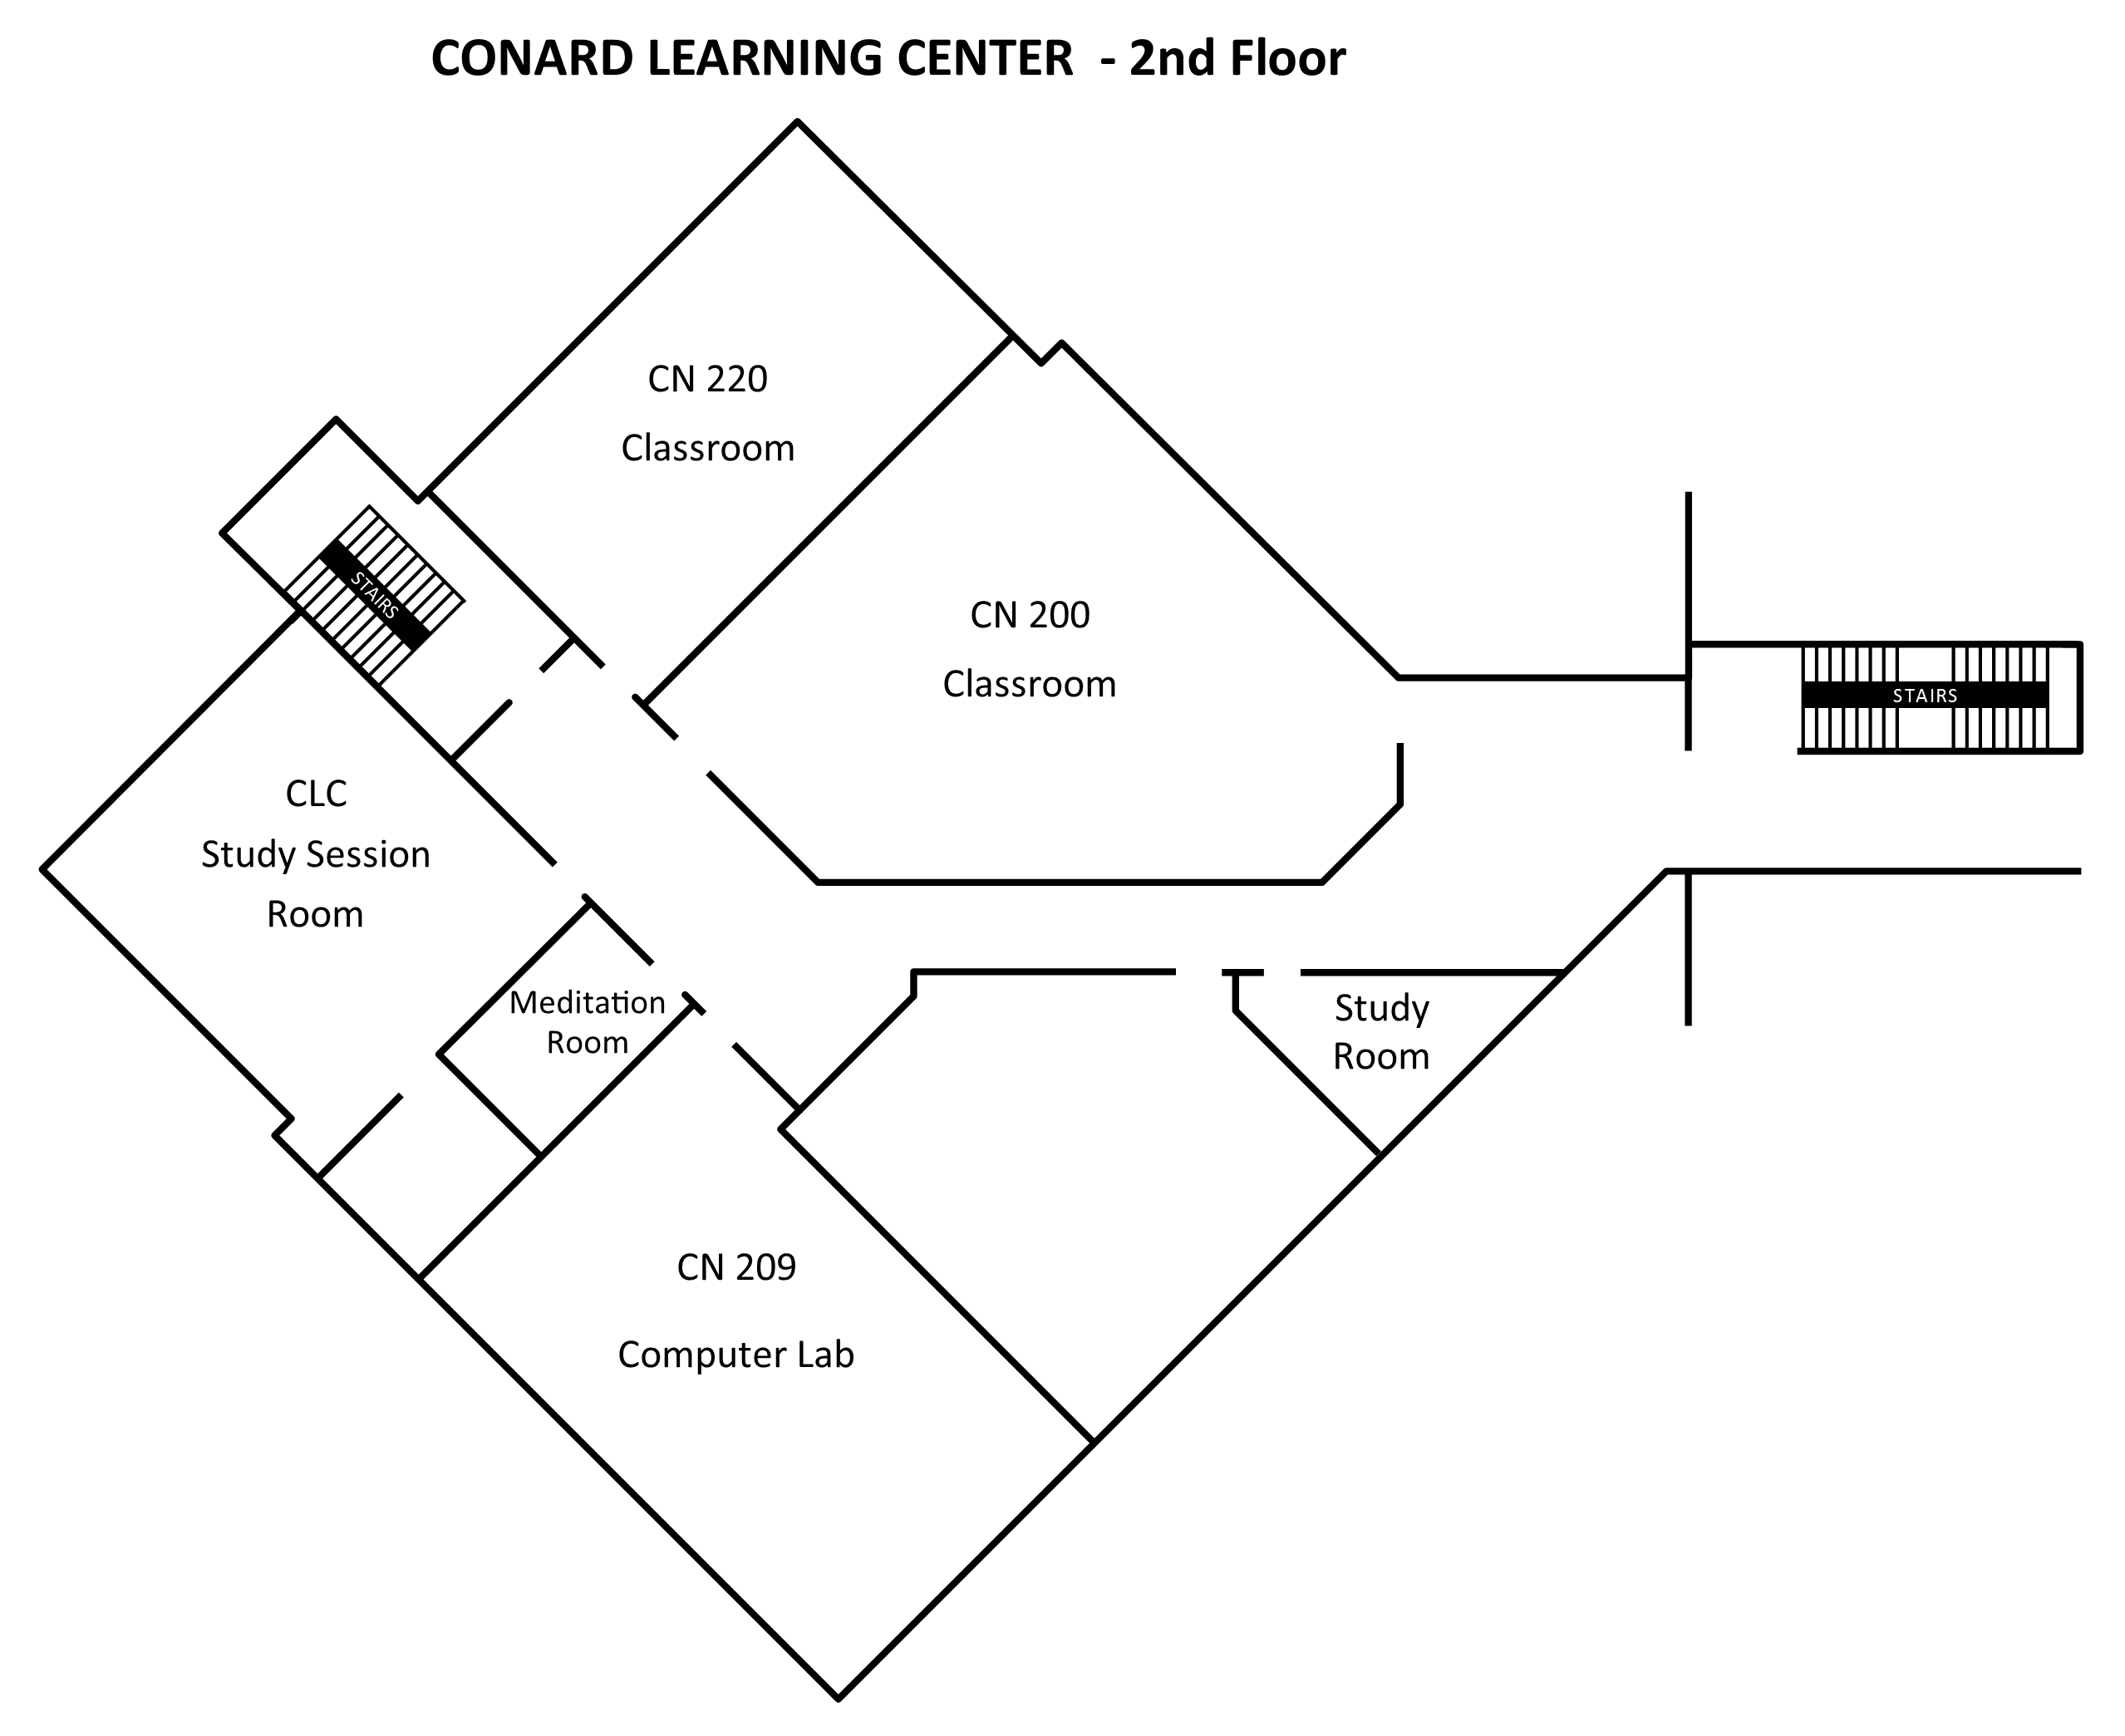 Conrad learning center second floor floorplan